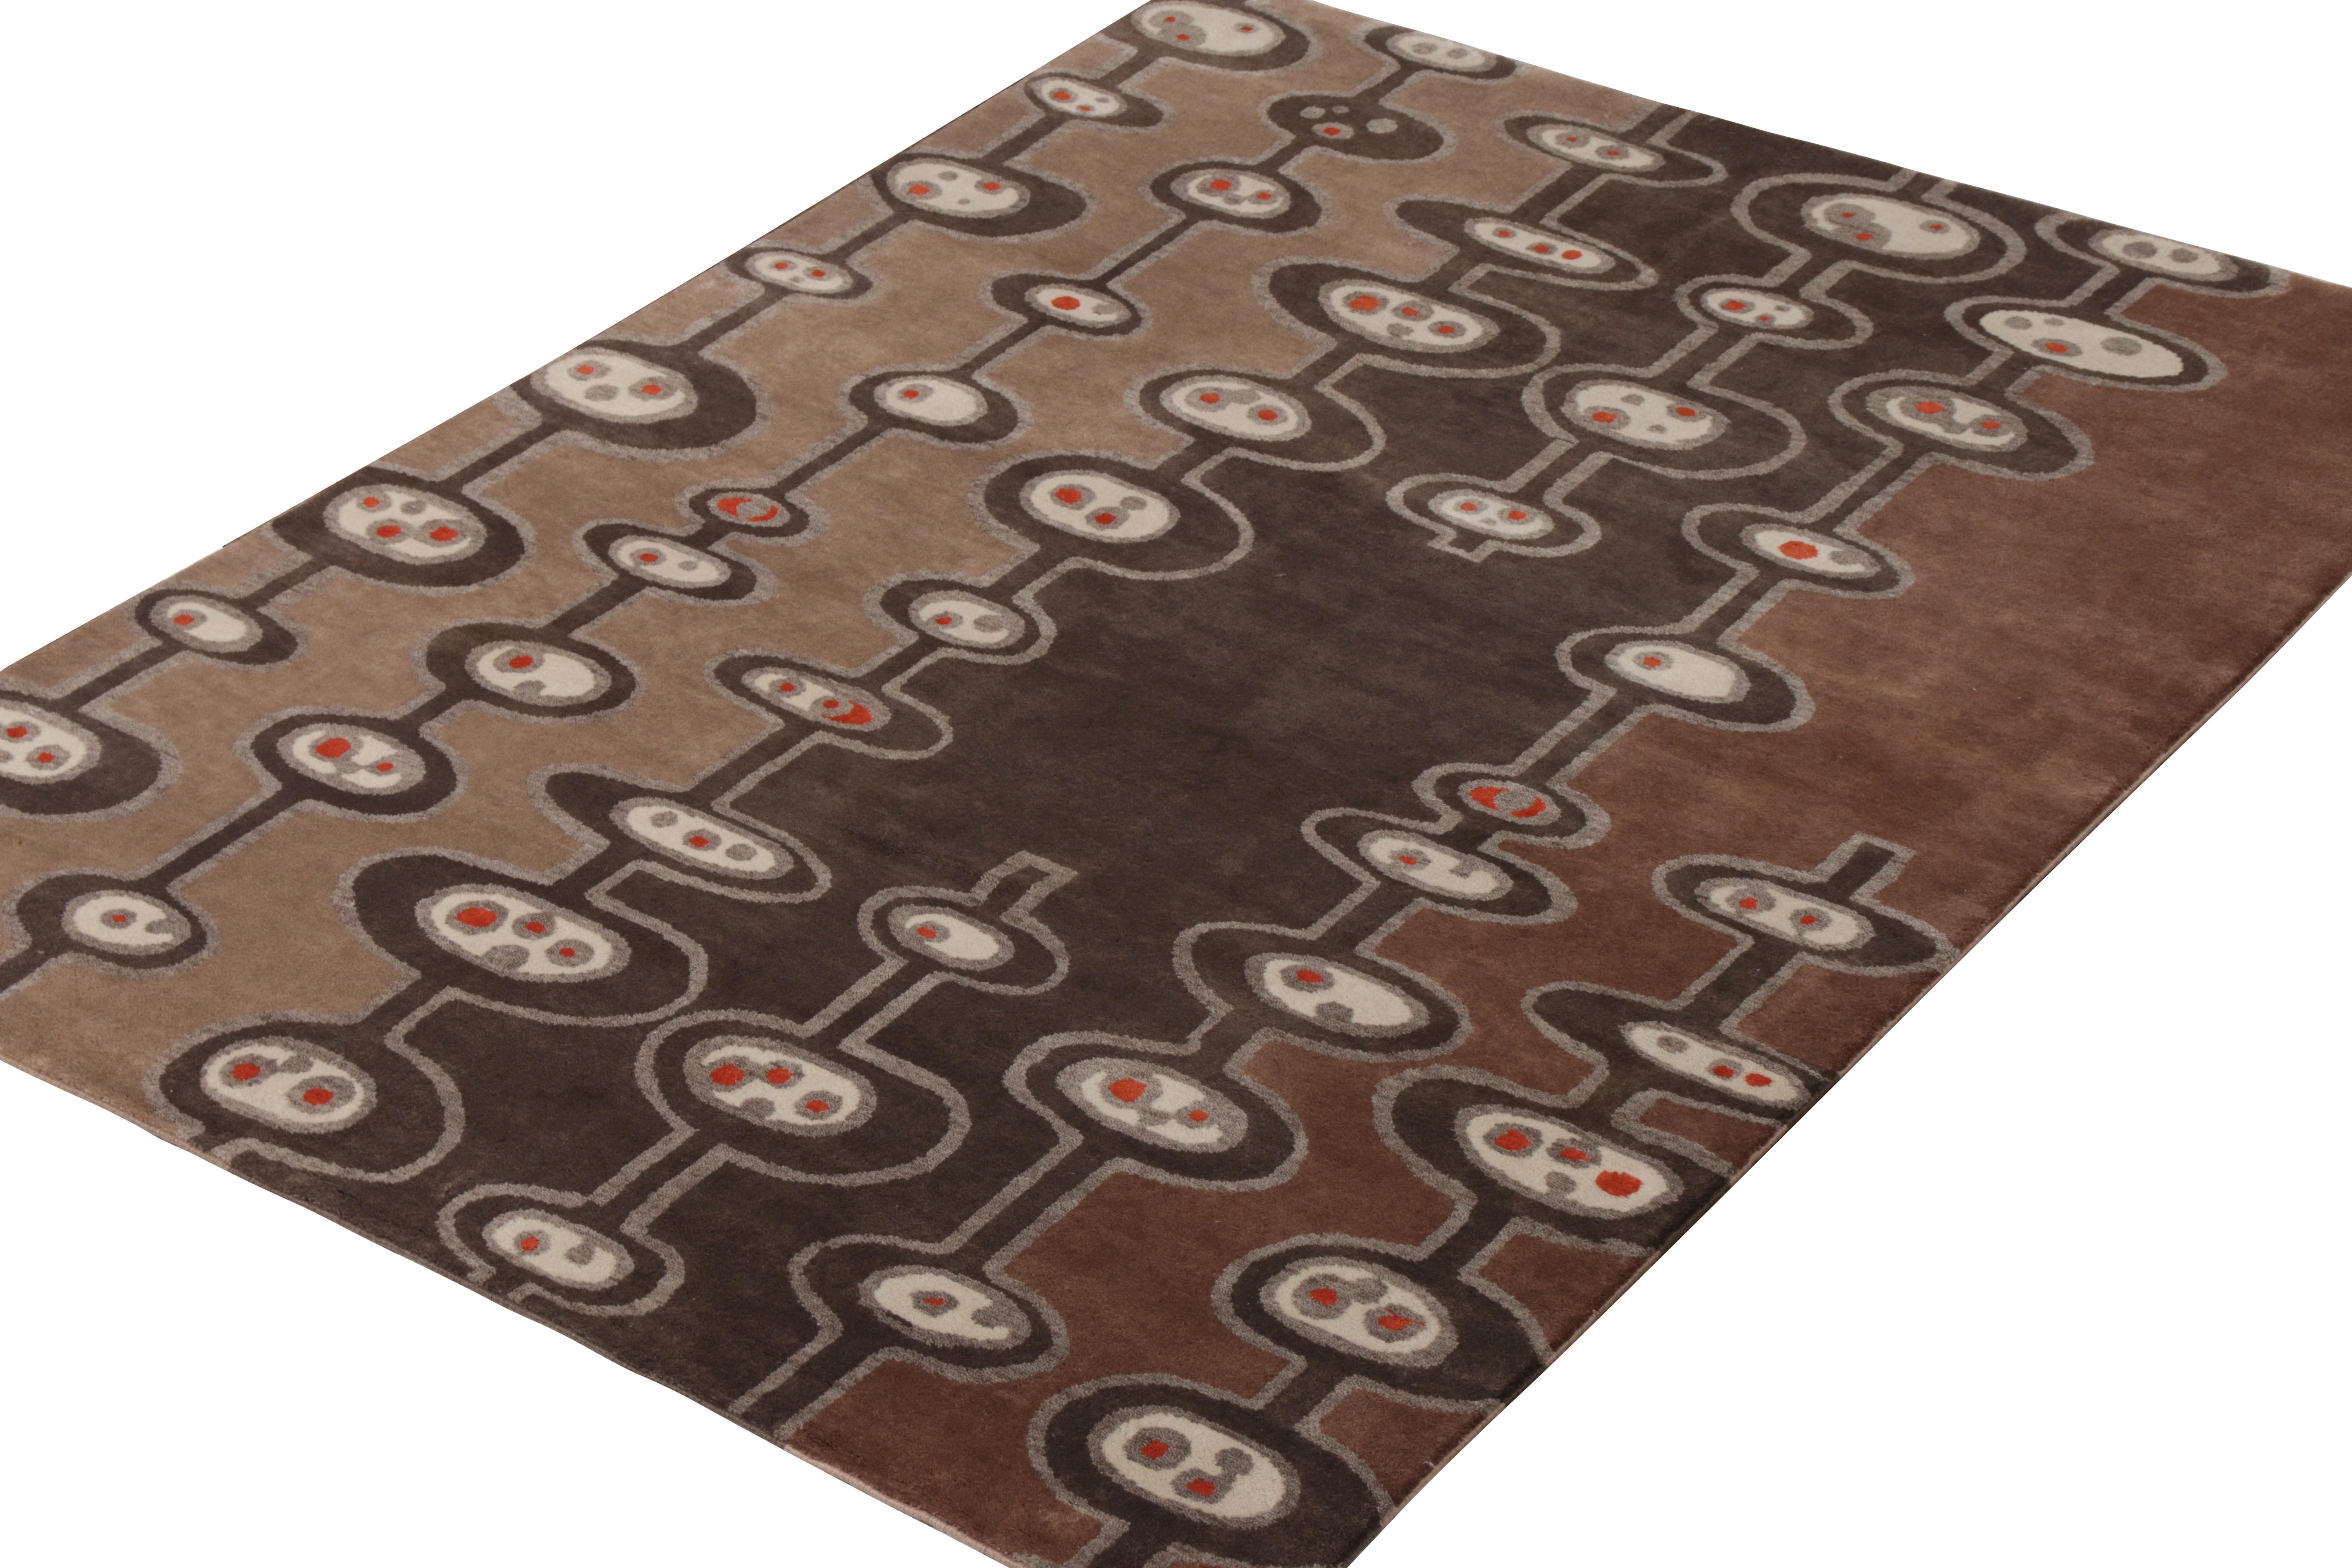 Dieser 6 x 8 große, handgeknüpfte Teppich aus einer einzigartigen Mischung aus Wolle und Seide gehört zur Mid-Century Modern Teppichkollektion von Rug & Kilim, die Muster im Stil des Atomzeitalters in luxuriöser Qualität in Bezug auf Größe, Grafik,